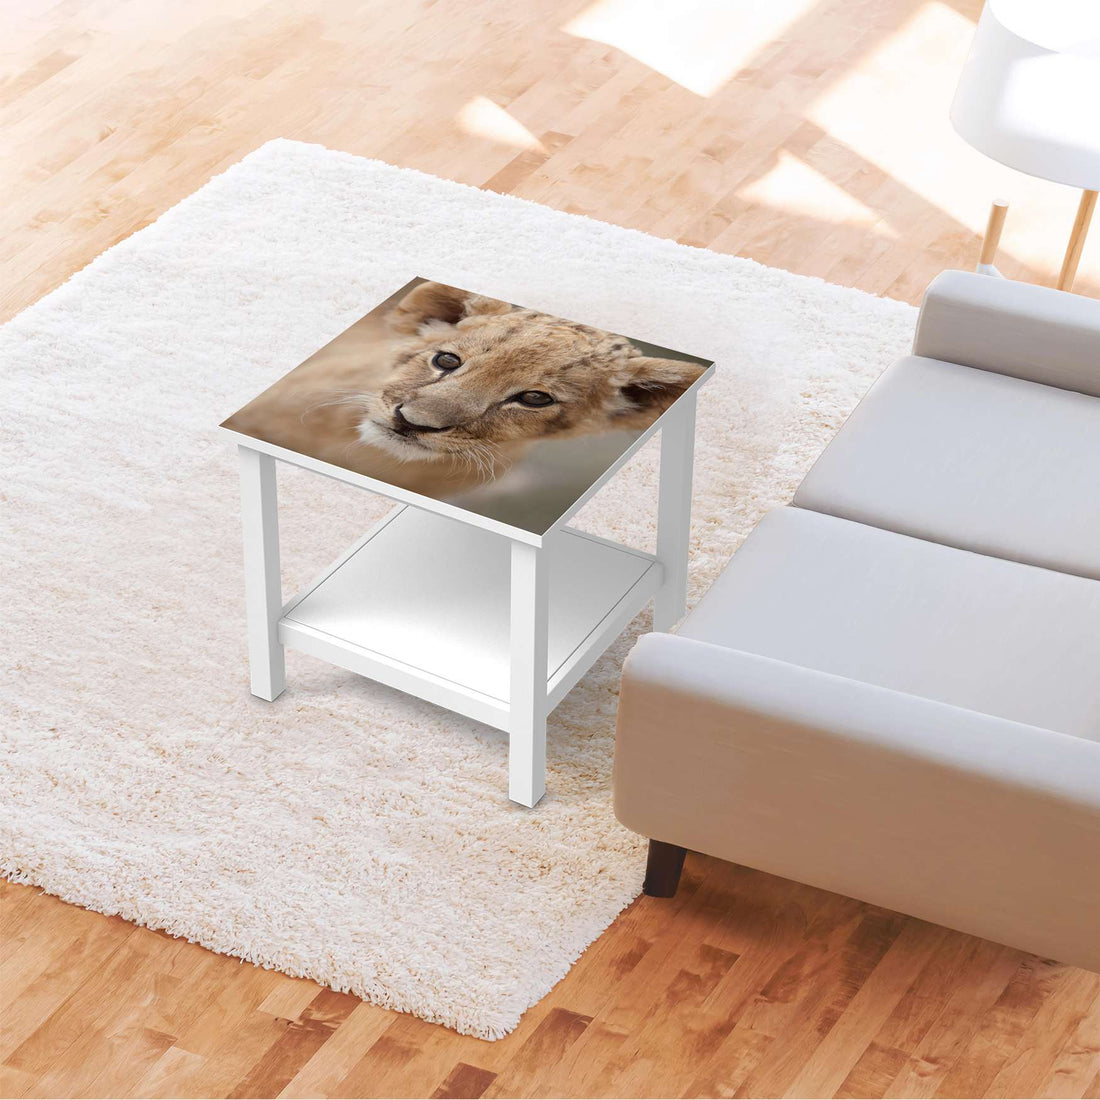 Möbel Klebefolie Simba - IKEA Hemnes Beistelltisch 55x55 cm - Wohnzimmer